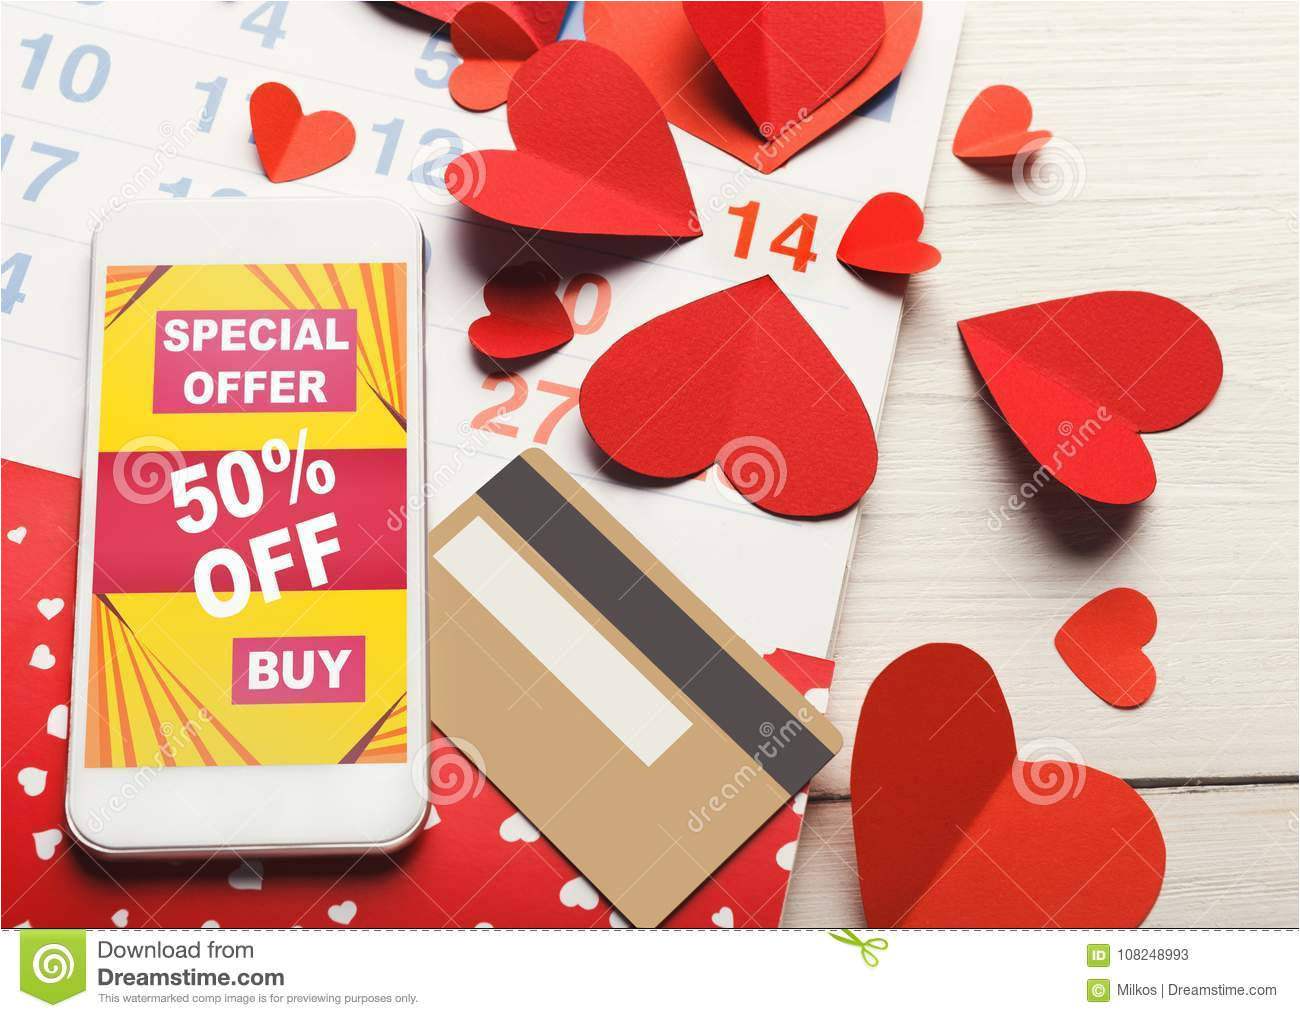 valentine day internet sales online shopping valentine day online shopping internet sales smartphone discount offer 108248993 jpg